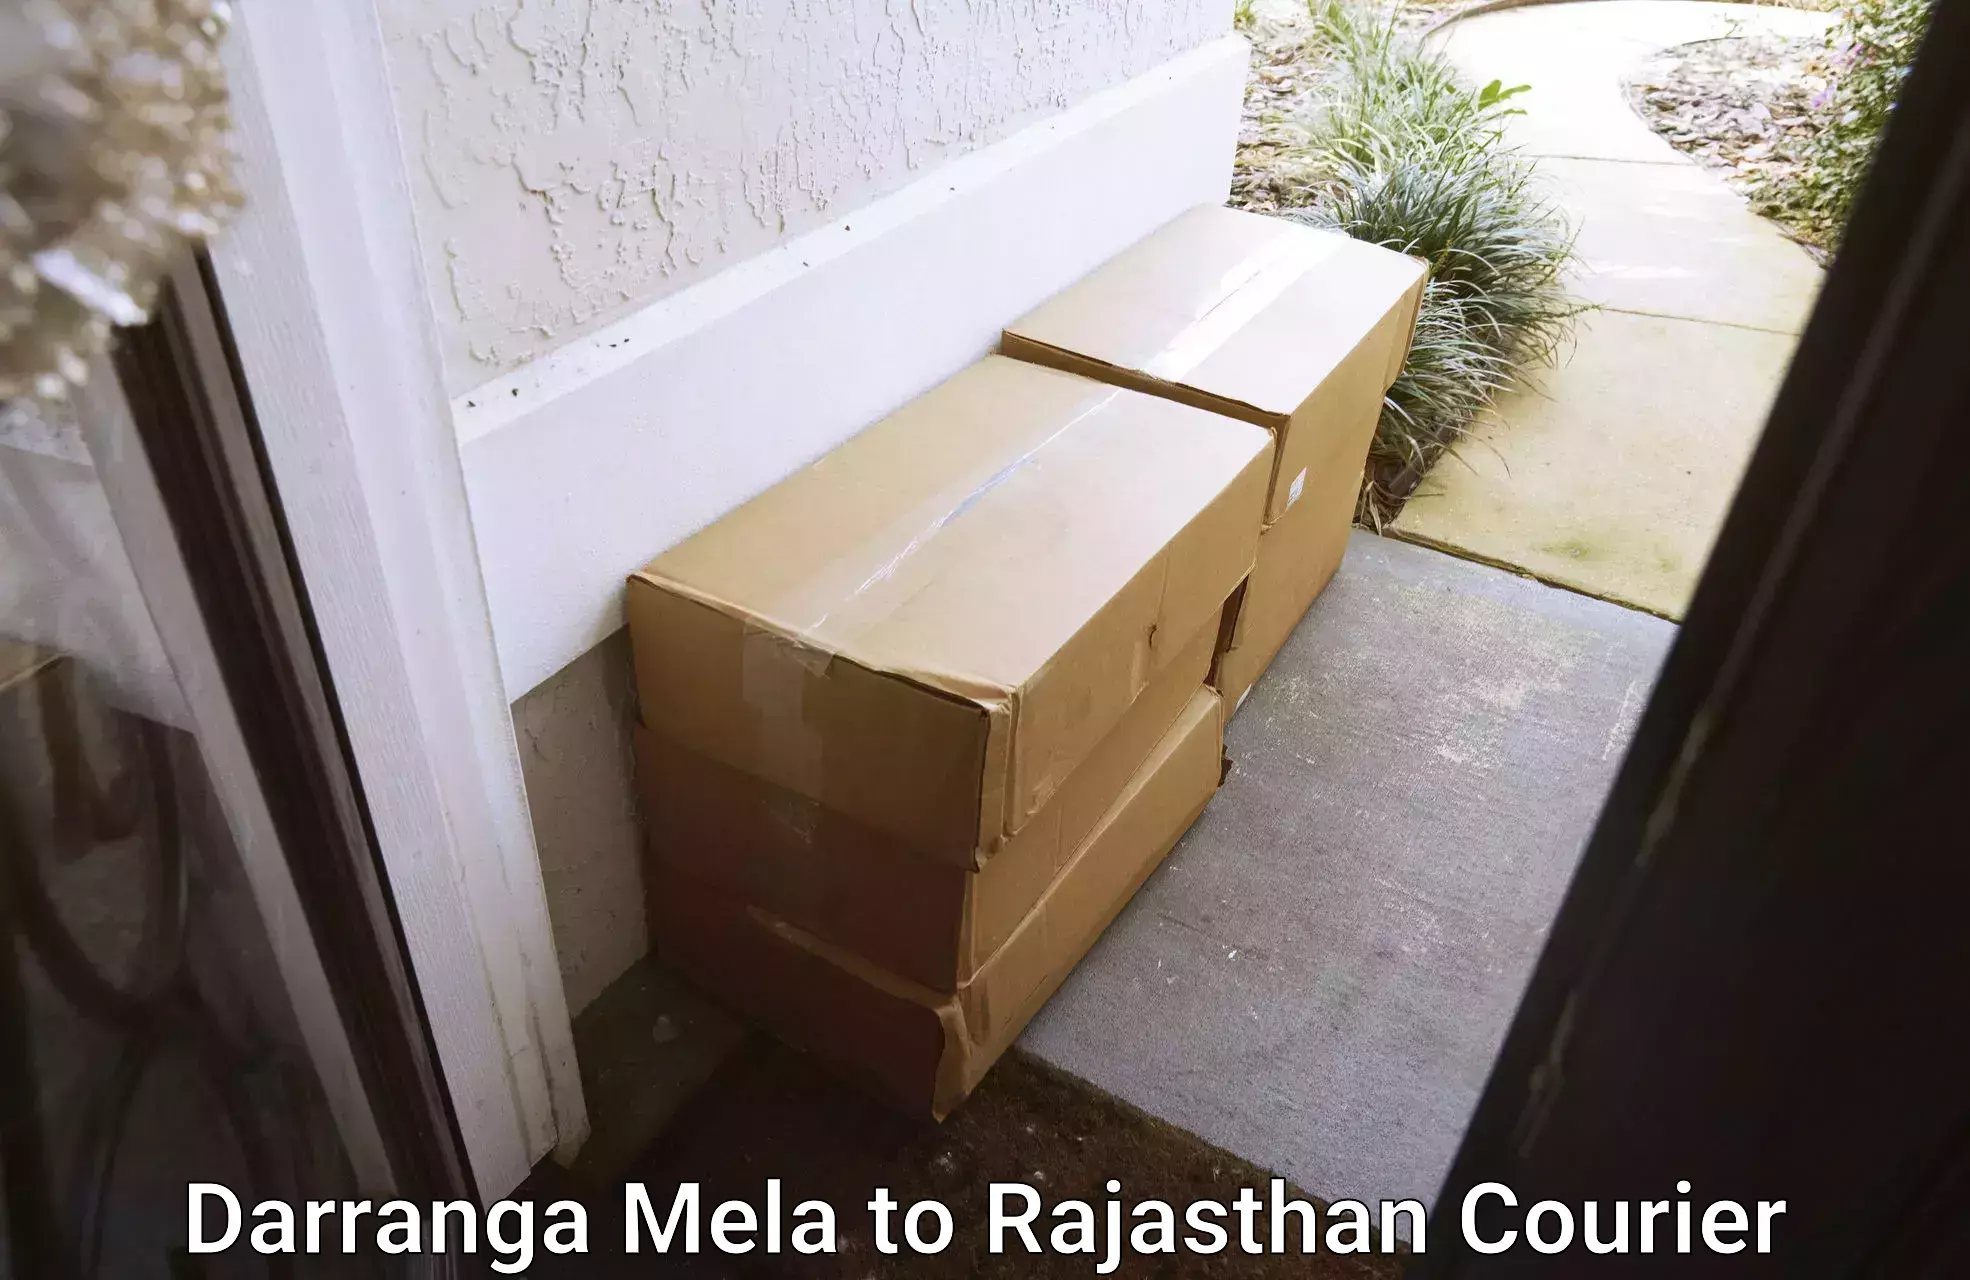 High-capacity courier solutions Darranga Mela to Ramgarh Sikar